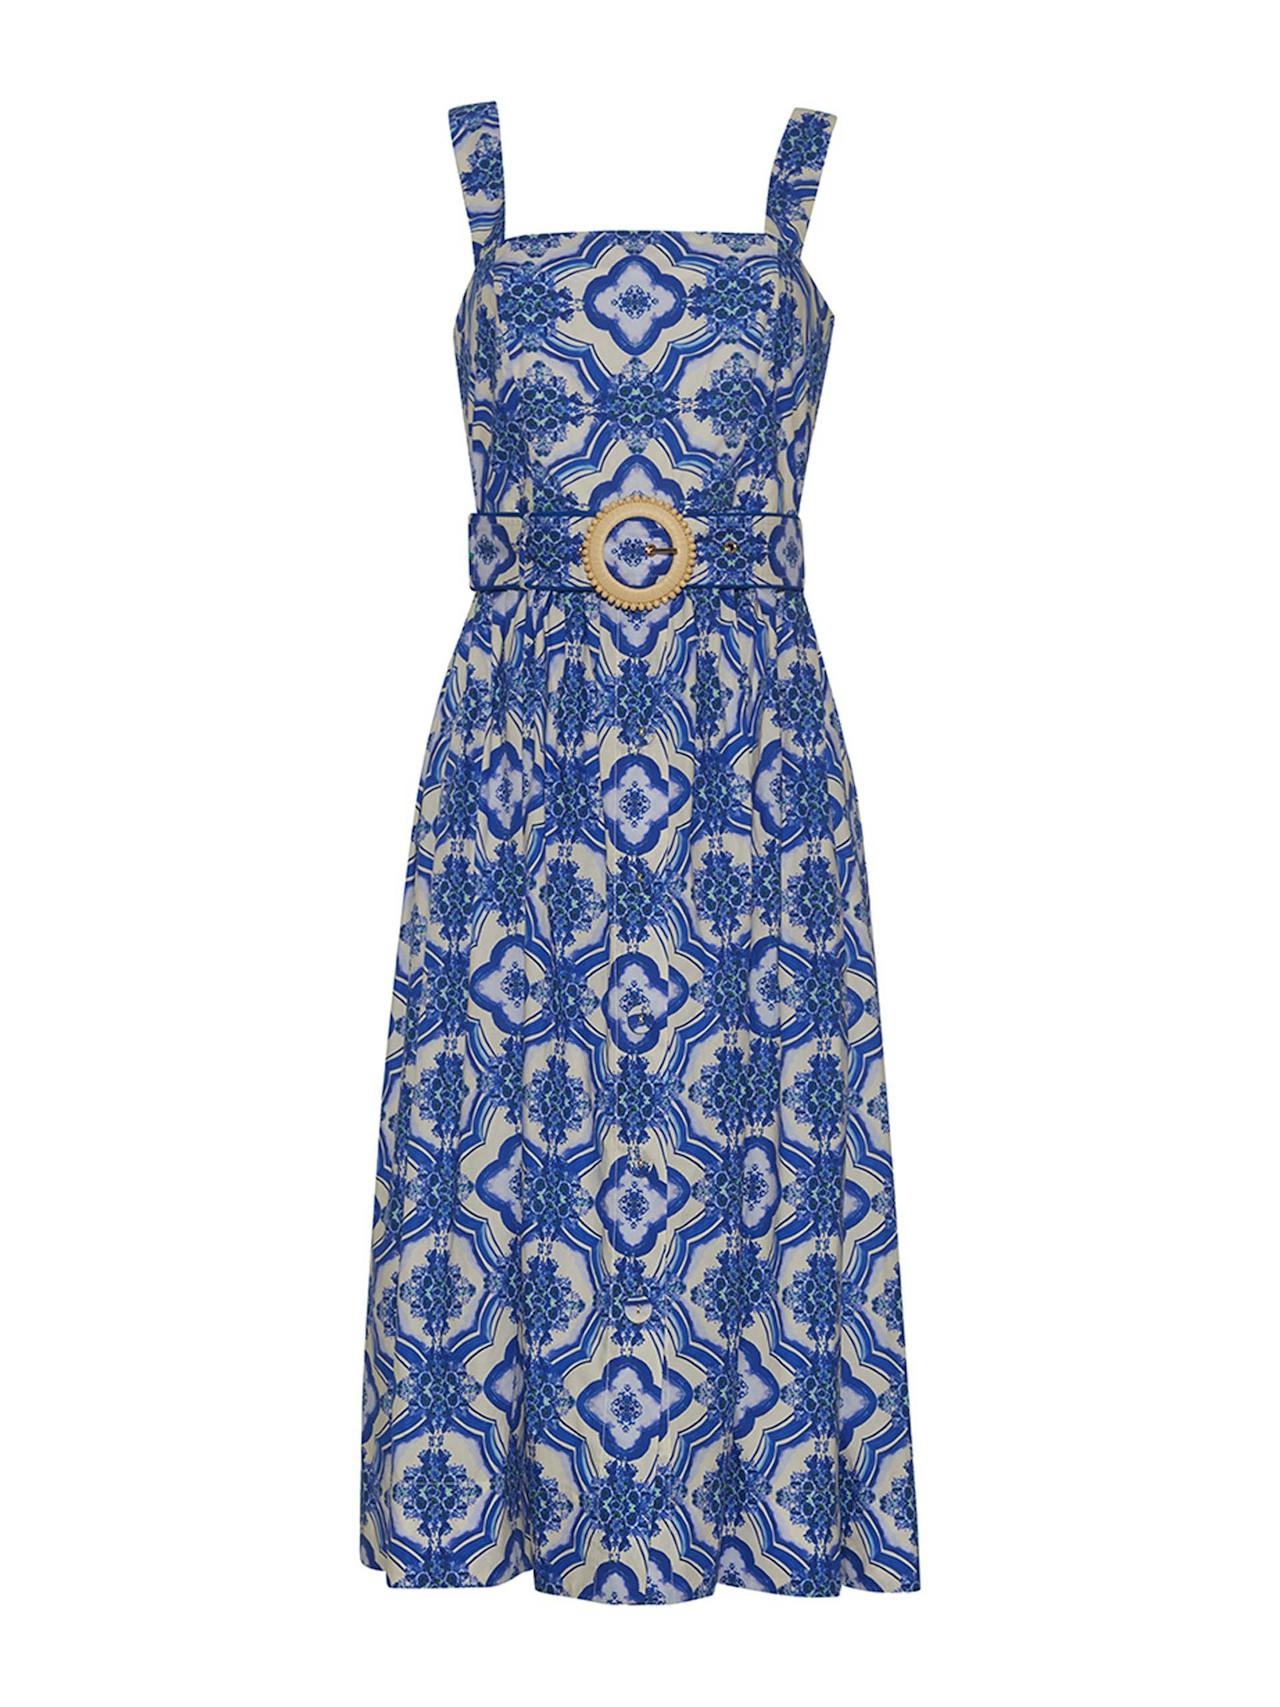 Belle tile blue Candace dress